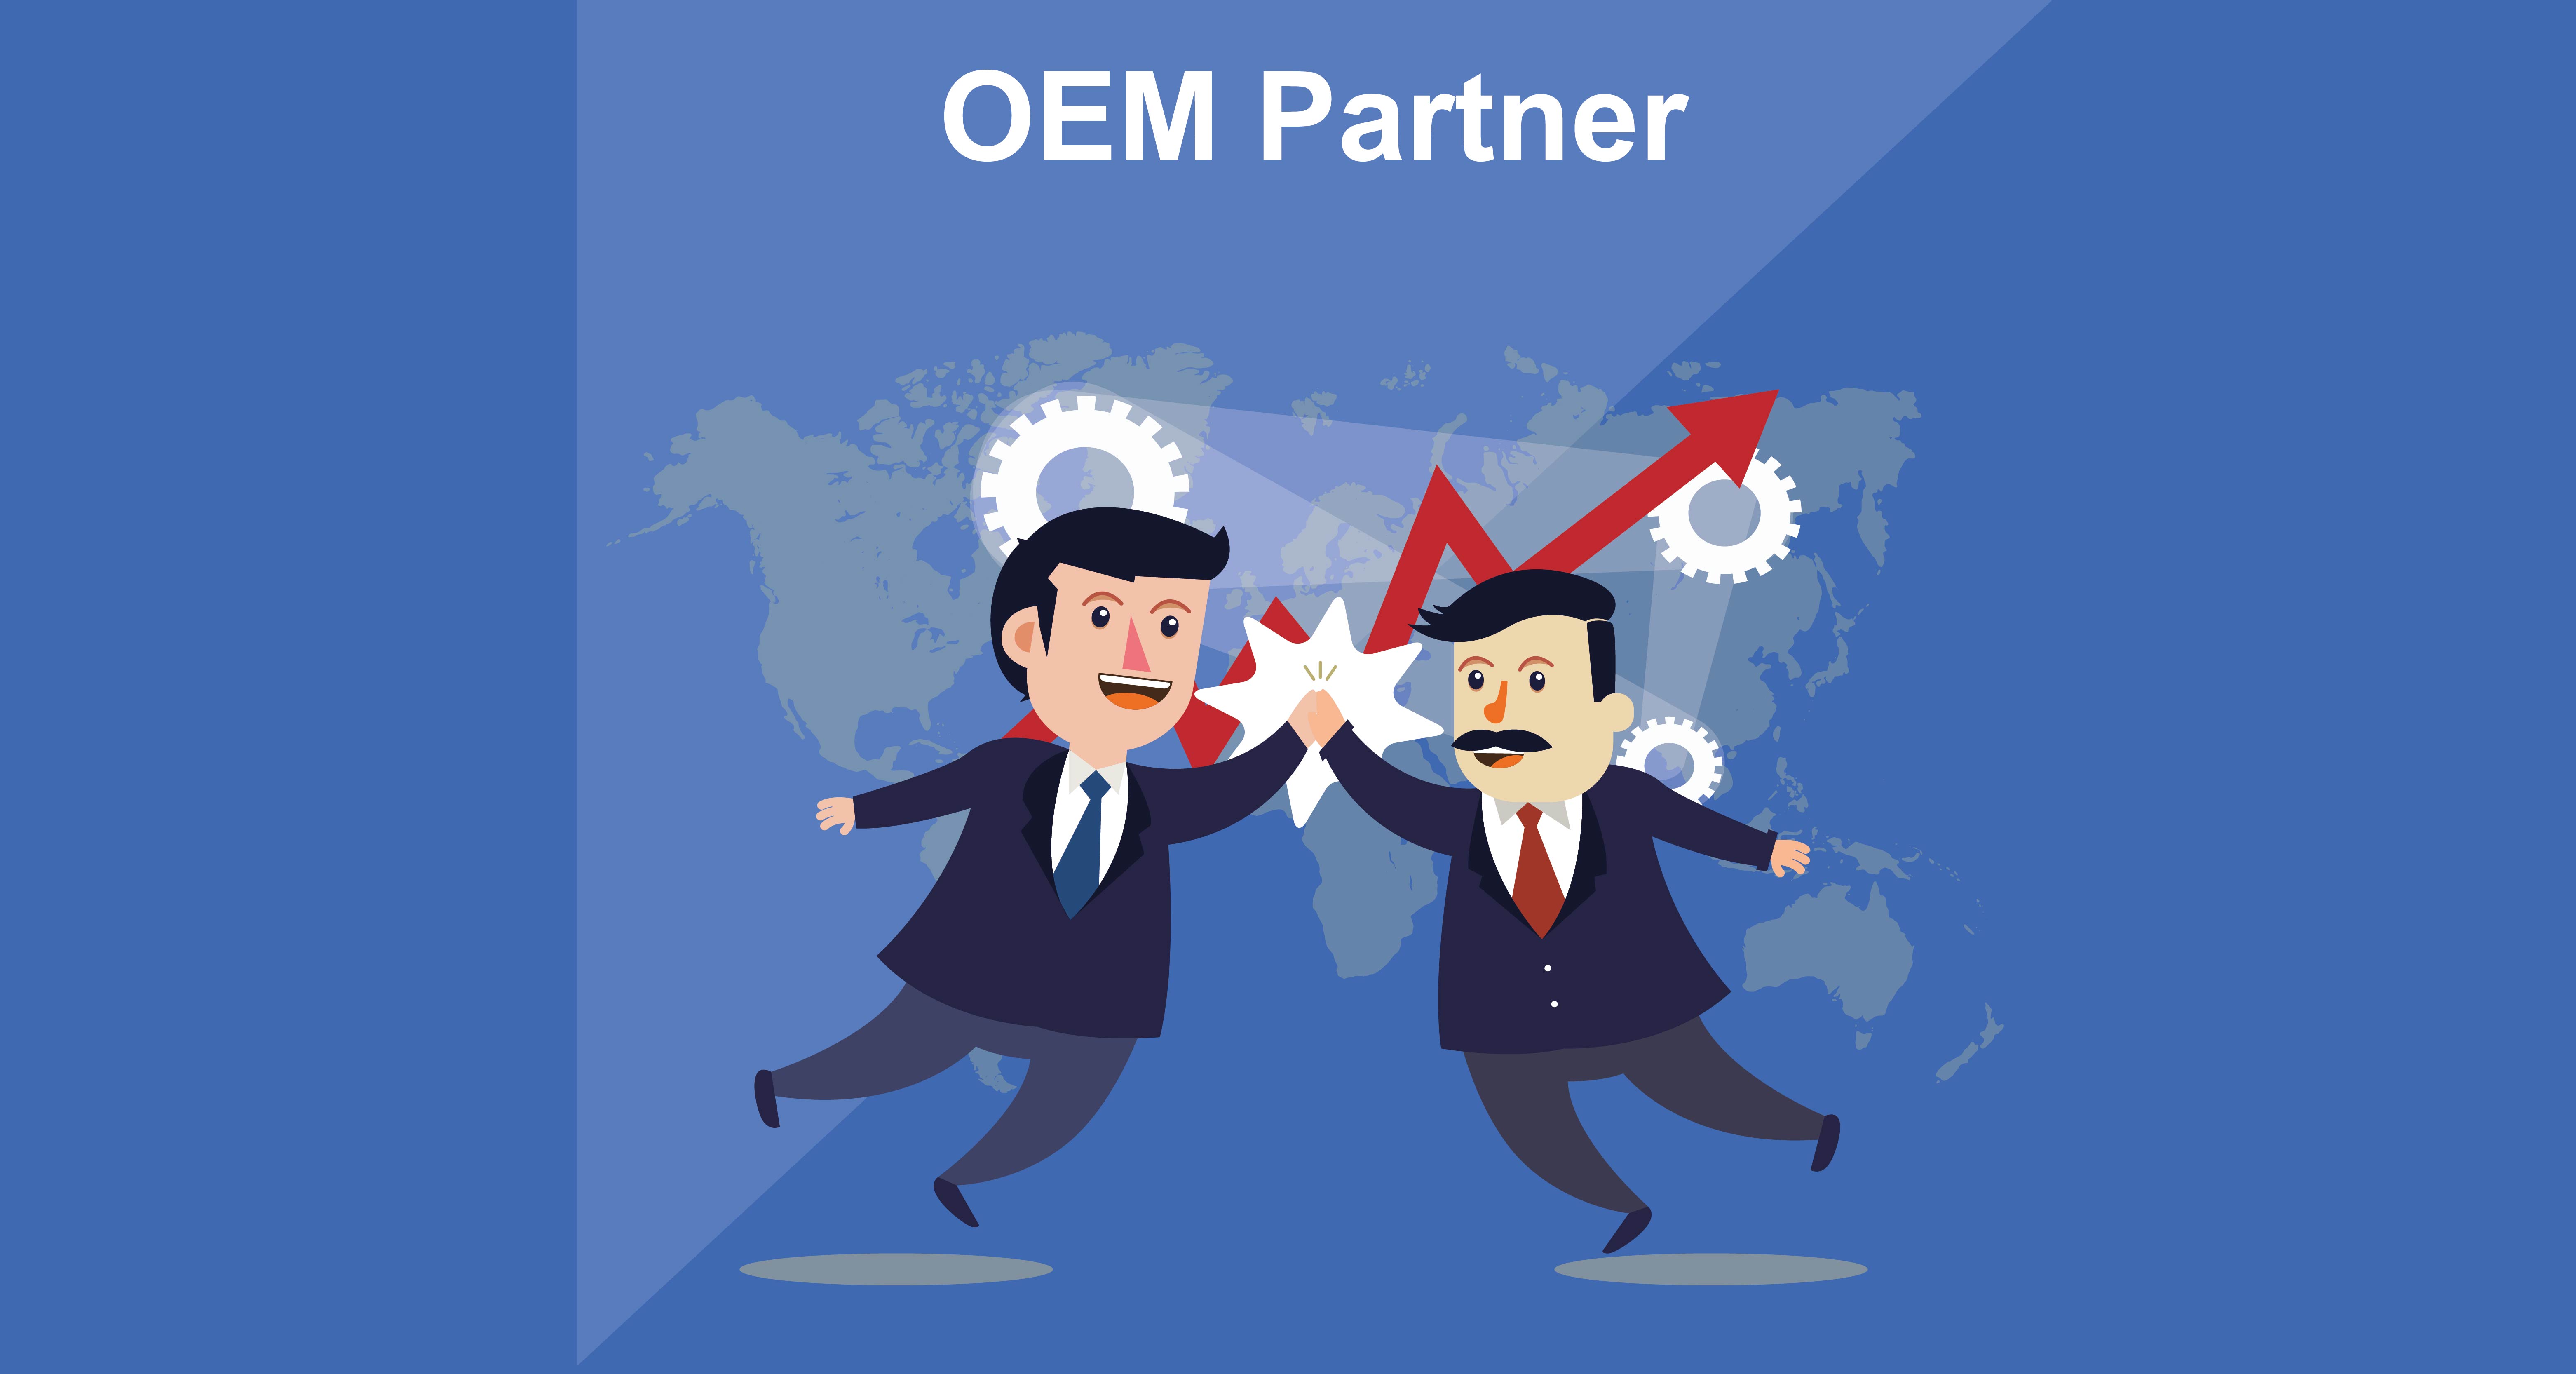 OEM Partner